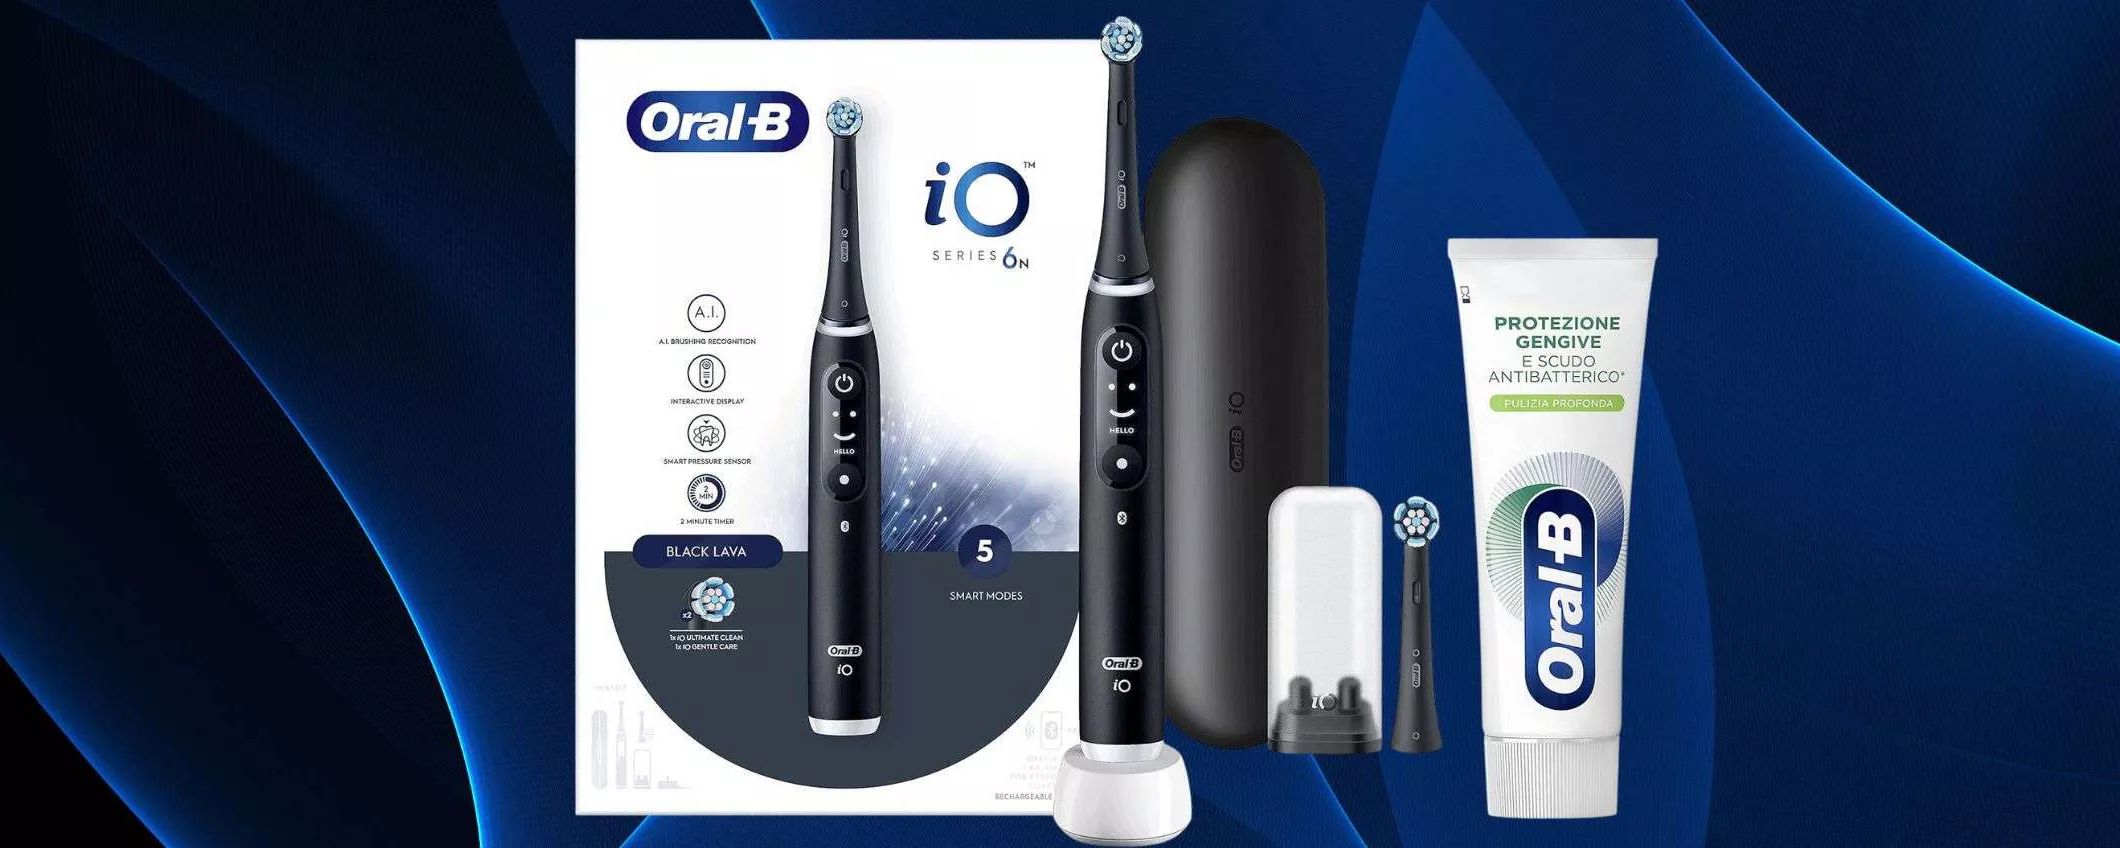 Oral-B iO6 in offerta ad un prezzo pazzesco: pulizia totale e c'è anche il display